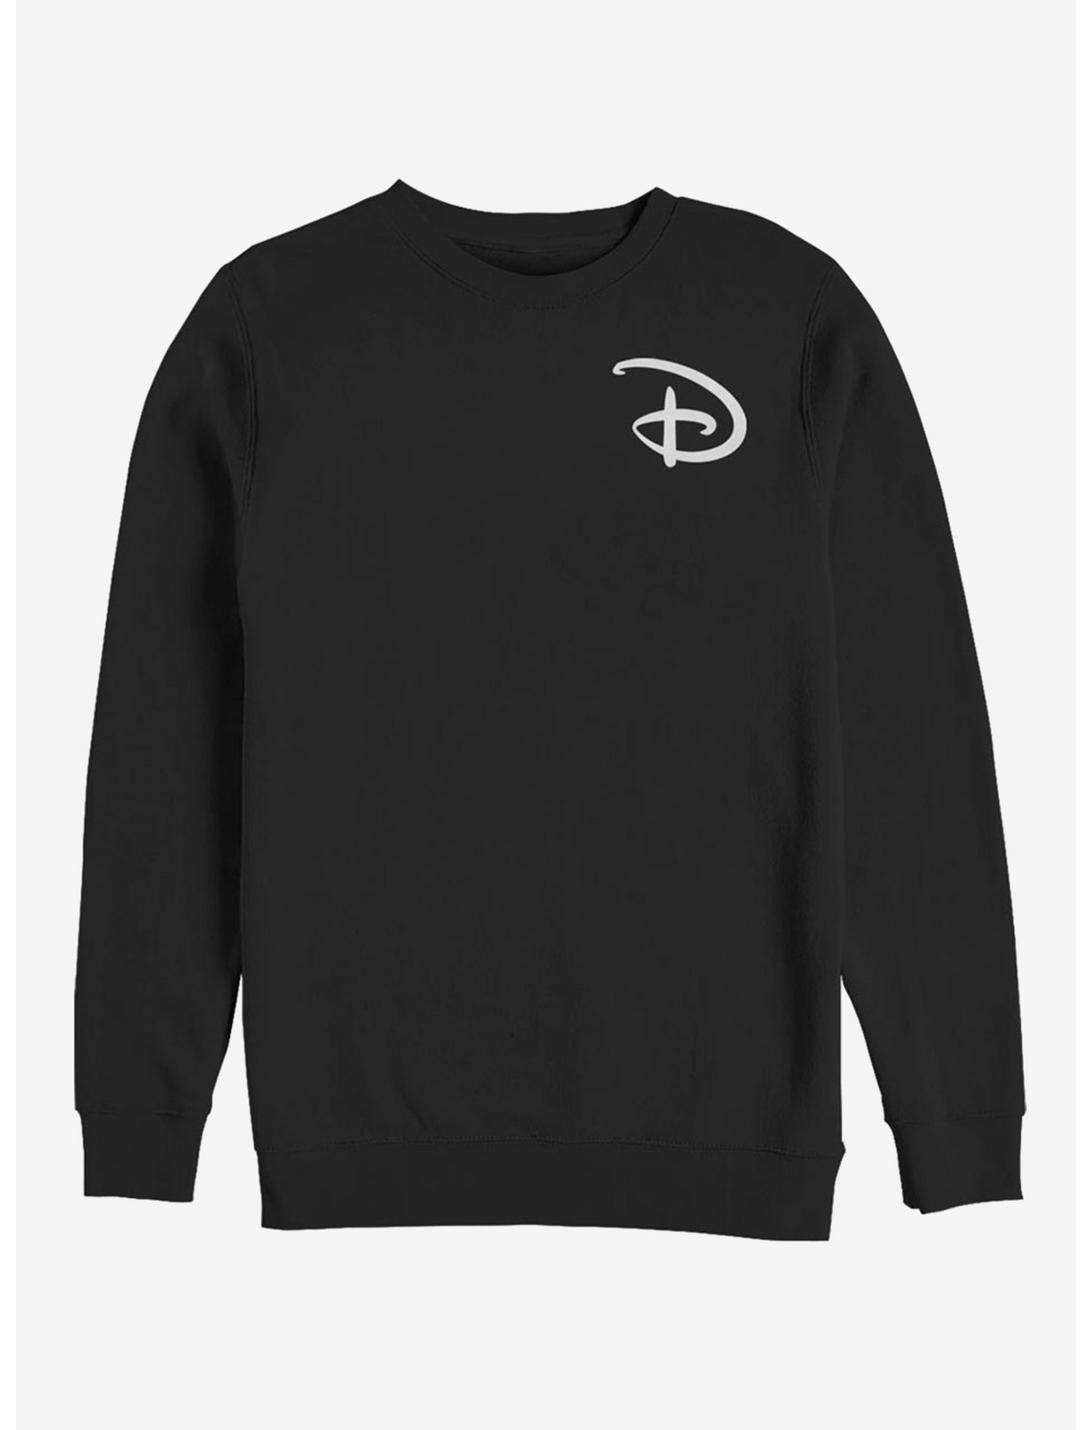 Disney Classic Disney D Pocket Logo Crew Sweatshirt, BLACK, hi-res